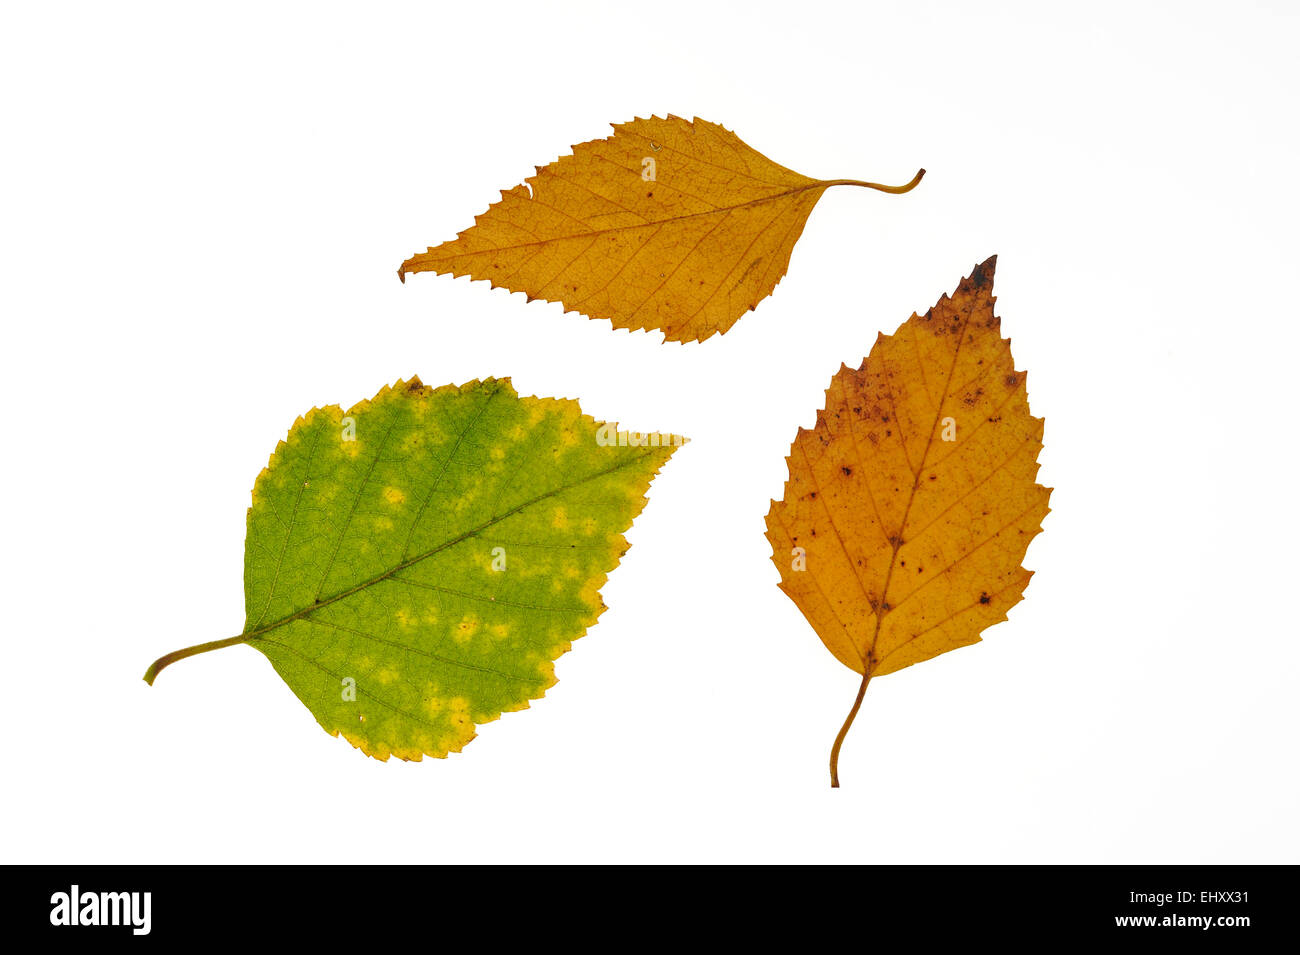 Papier-Birke / amerikanische weiße Birke / Kanu-Birke (Betula Papyrifera) Blätter in Herbstfärbung, ursprünglich aus Nordamerika auf weiß Stockfoto